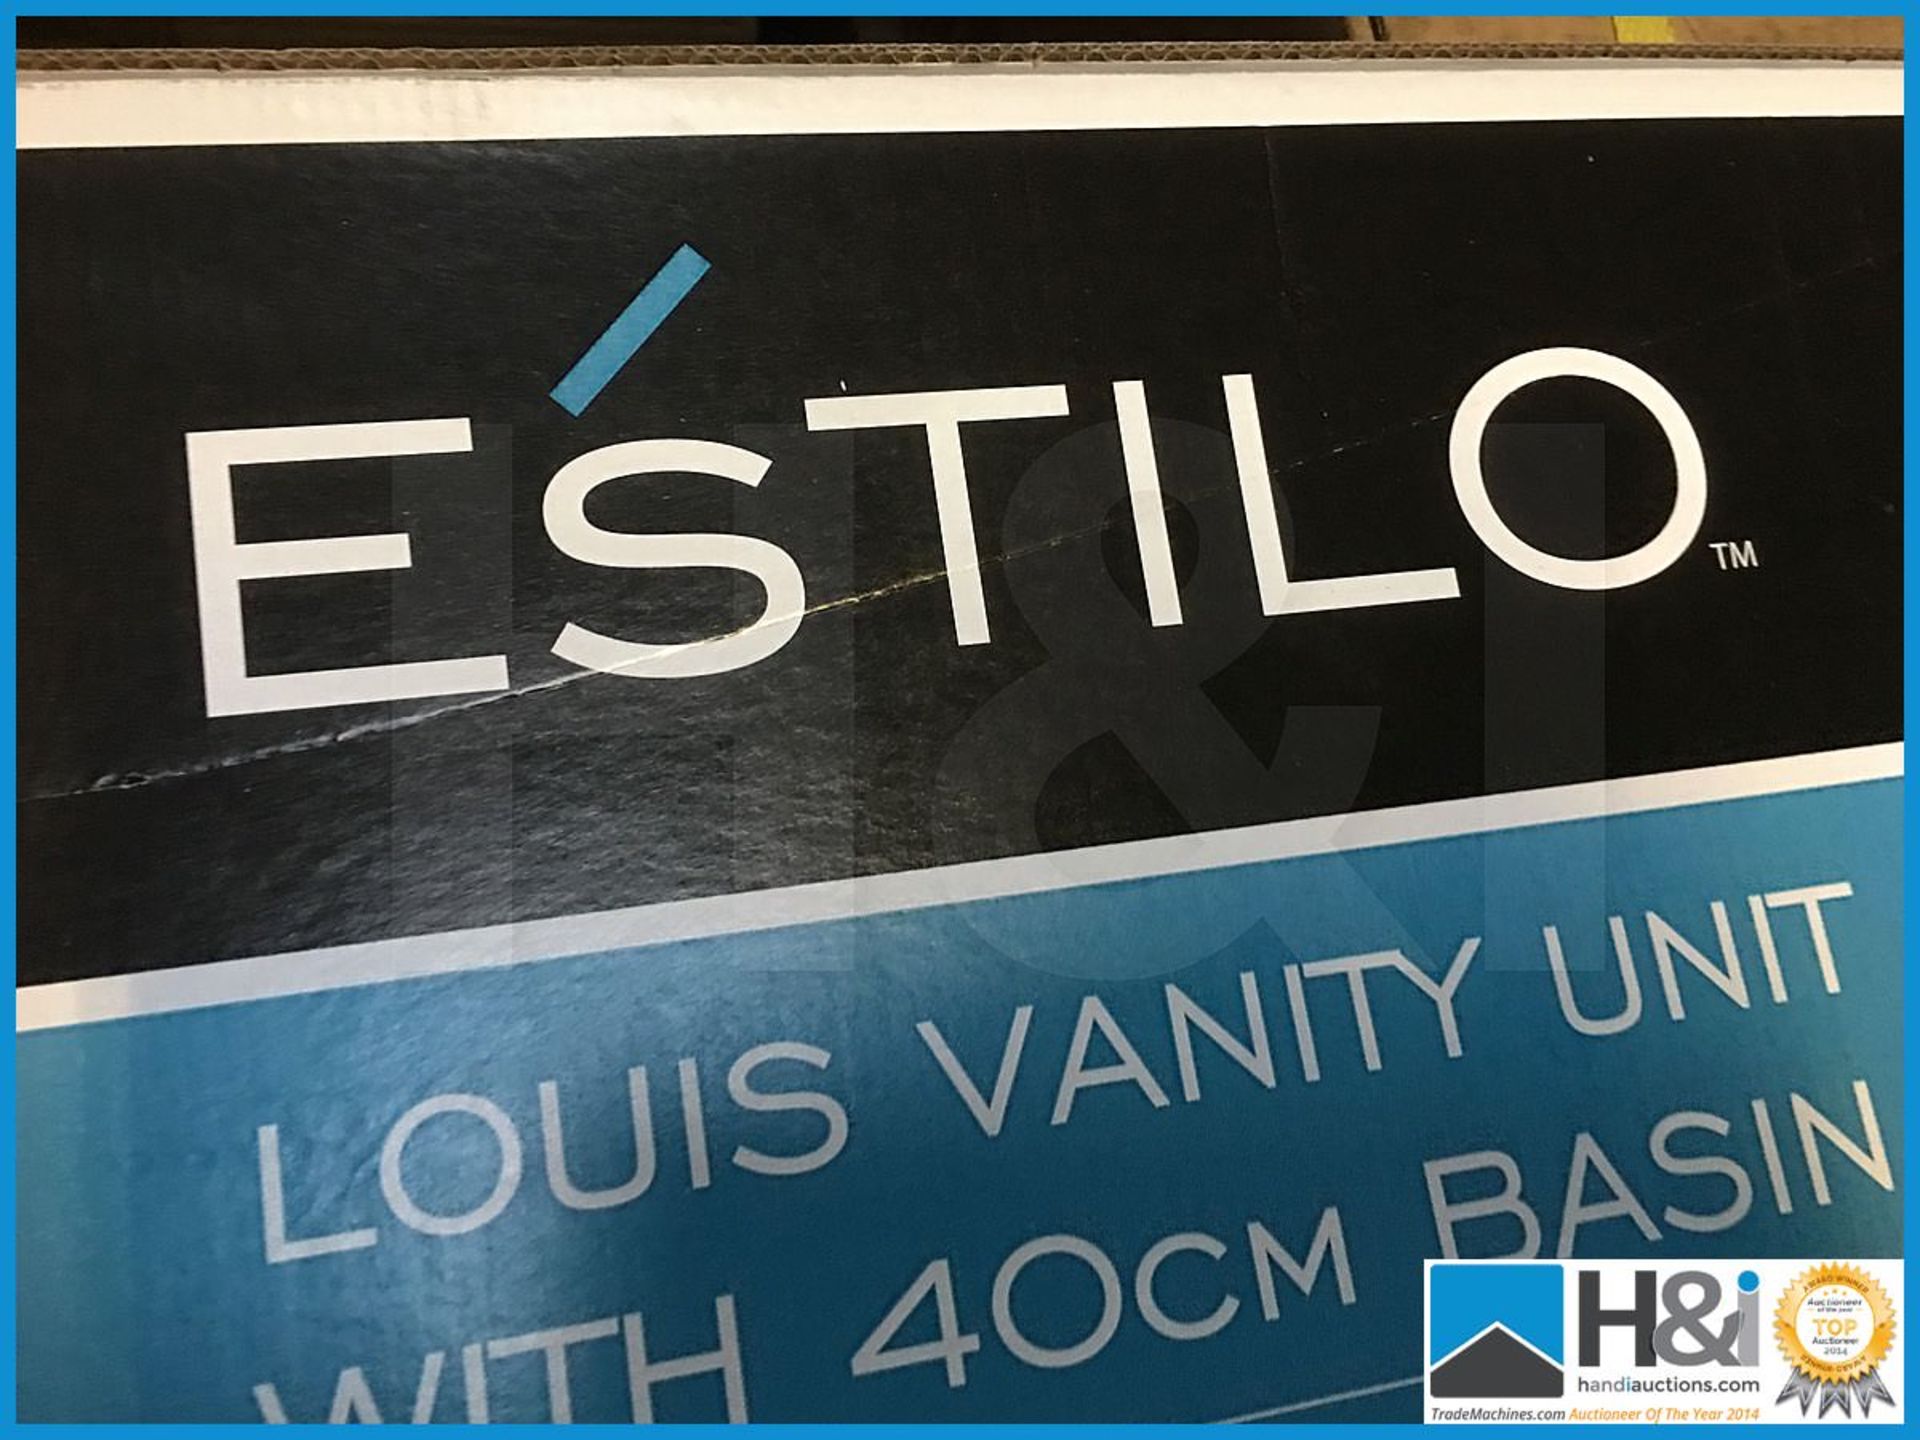 Designer Estilo Louis vanity unit with matching 400mm basin. Includes designer polished chrome V05 - Image 4 of 4